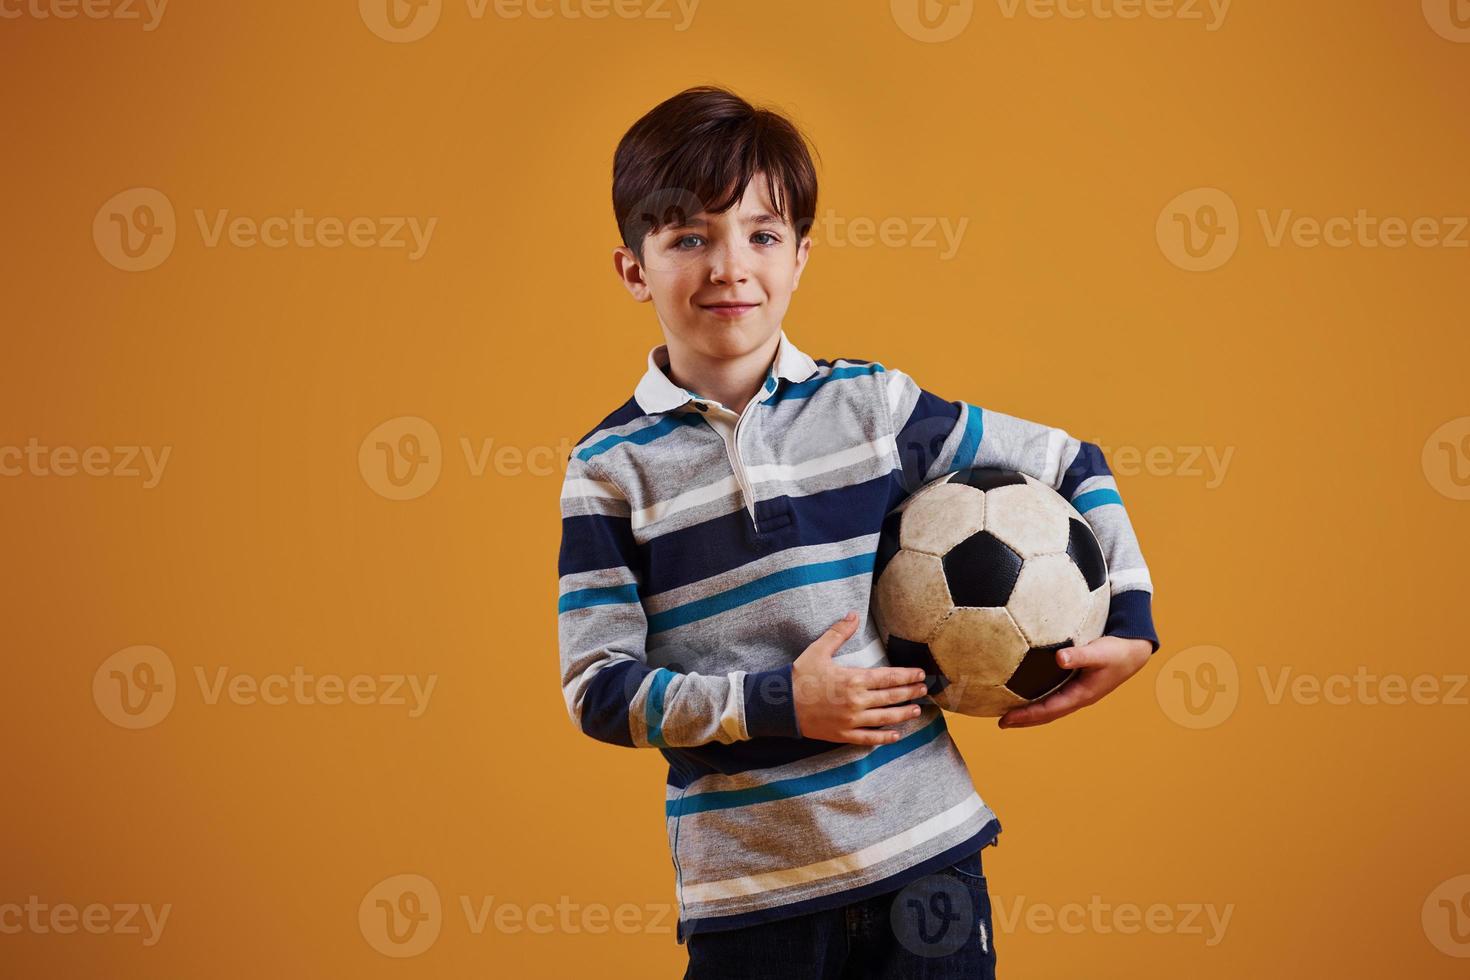 retrato de jovem jogador de futebol com bola. fica contra um fundo amarelo foto